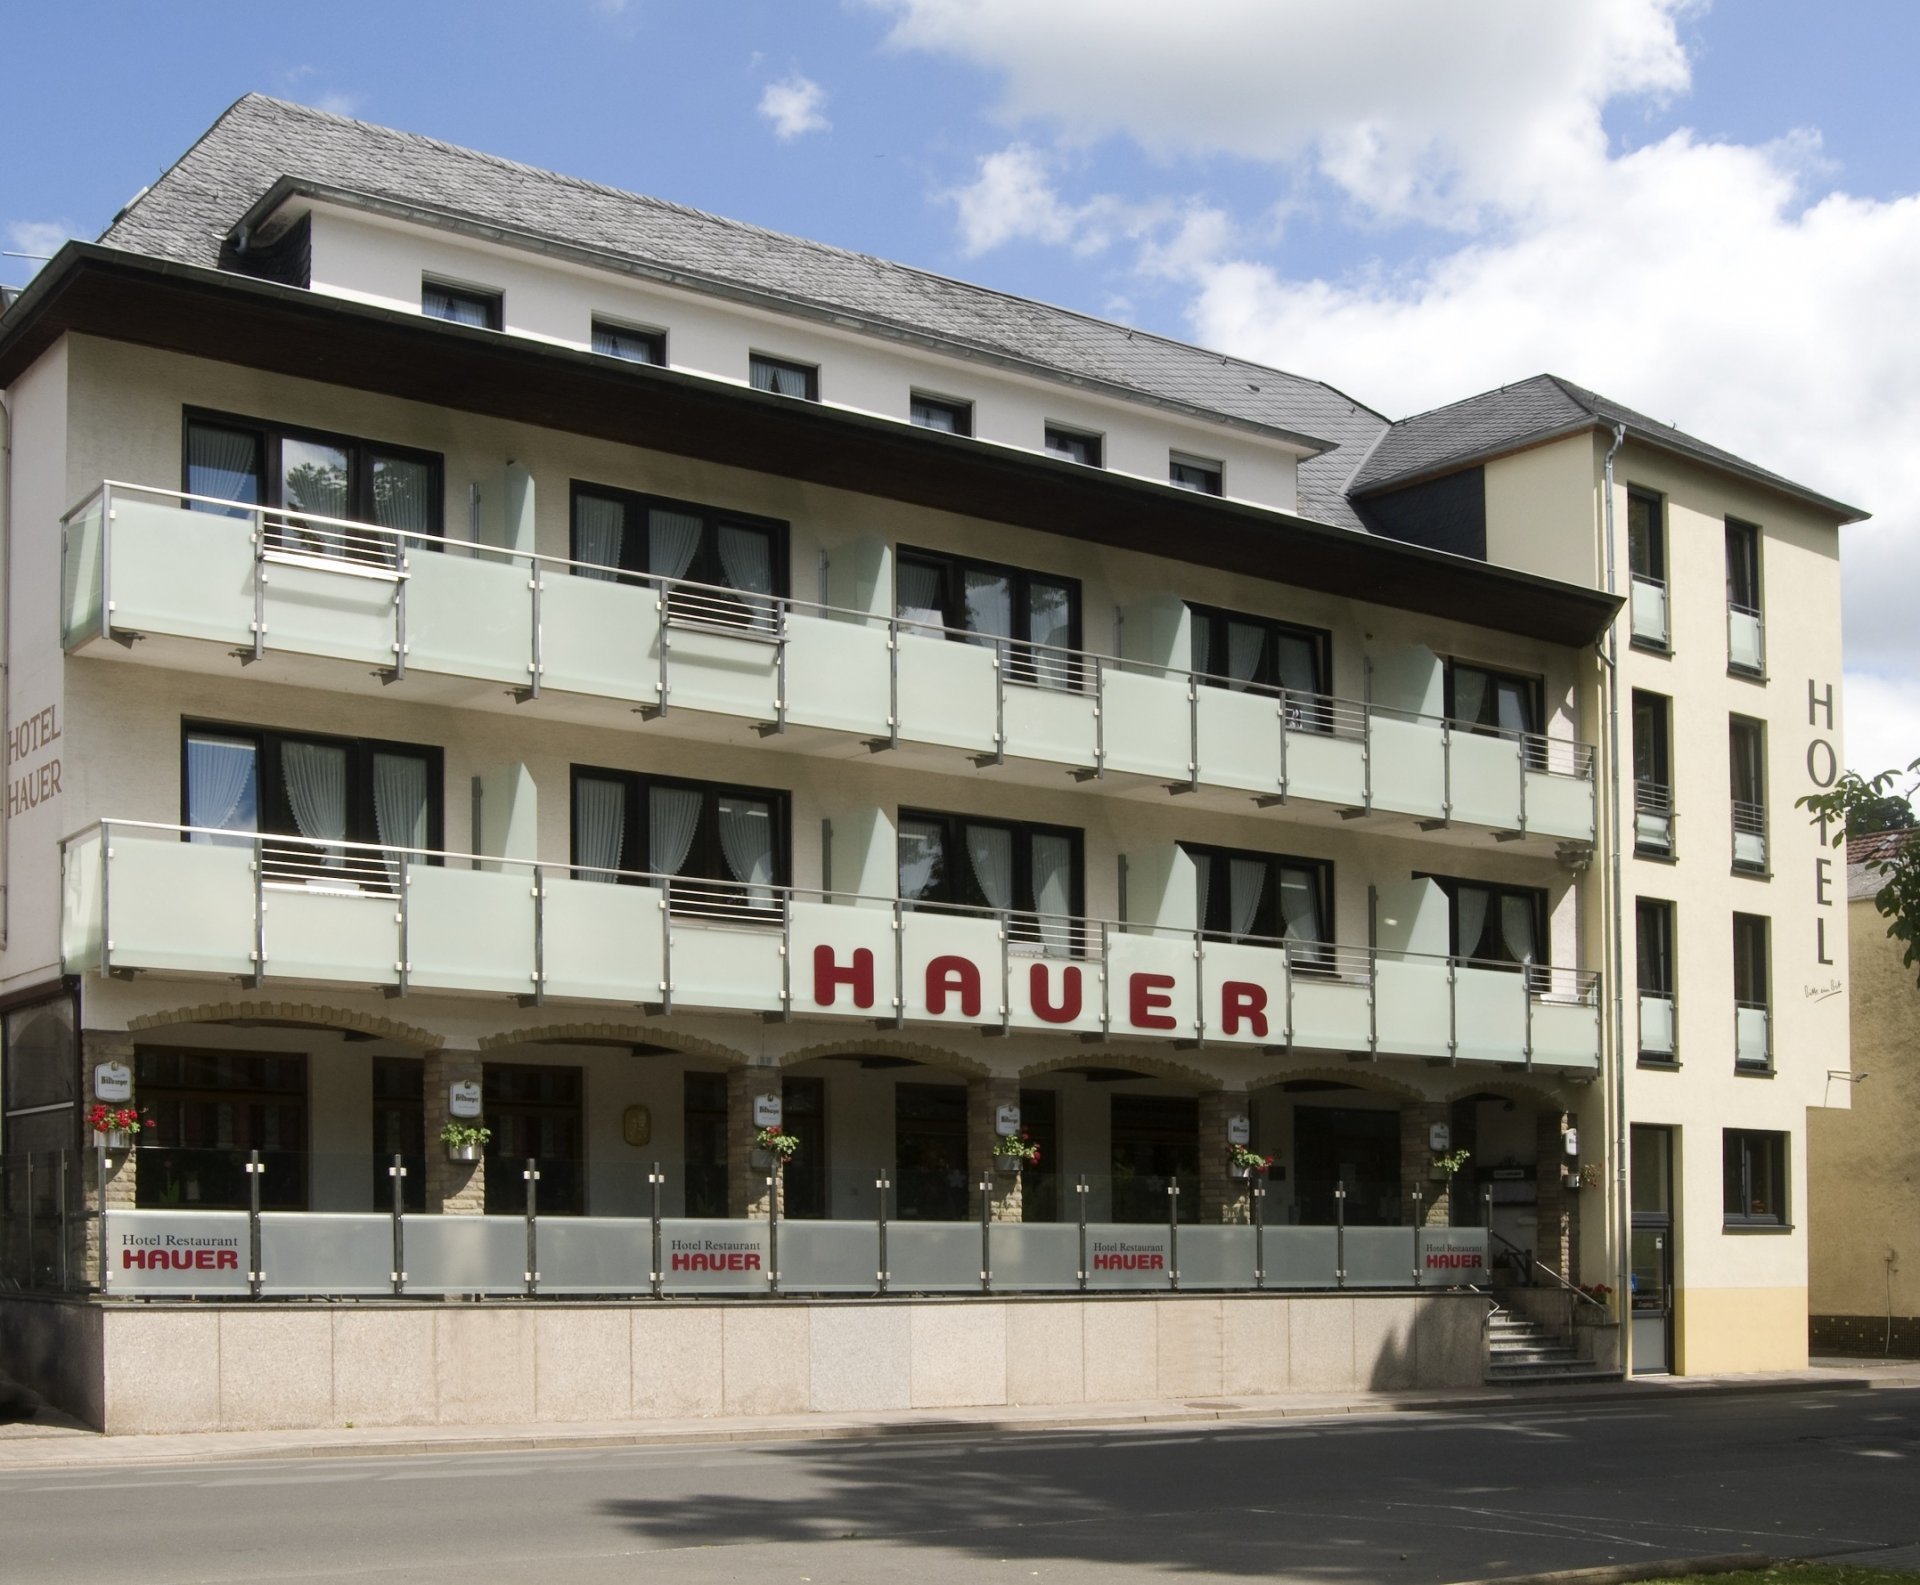 8 Tage Lust auf Natur – Hotel Hauer (3 Sterne) in Bollendorf, Rheinland-Pfalz inkl. Frühstück